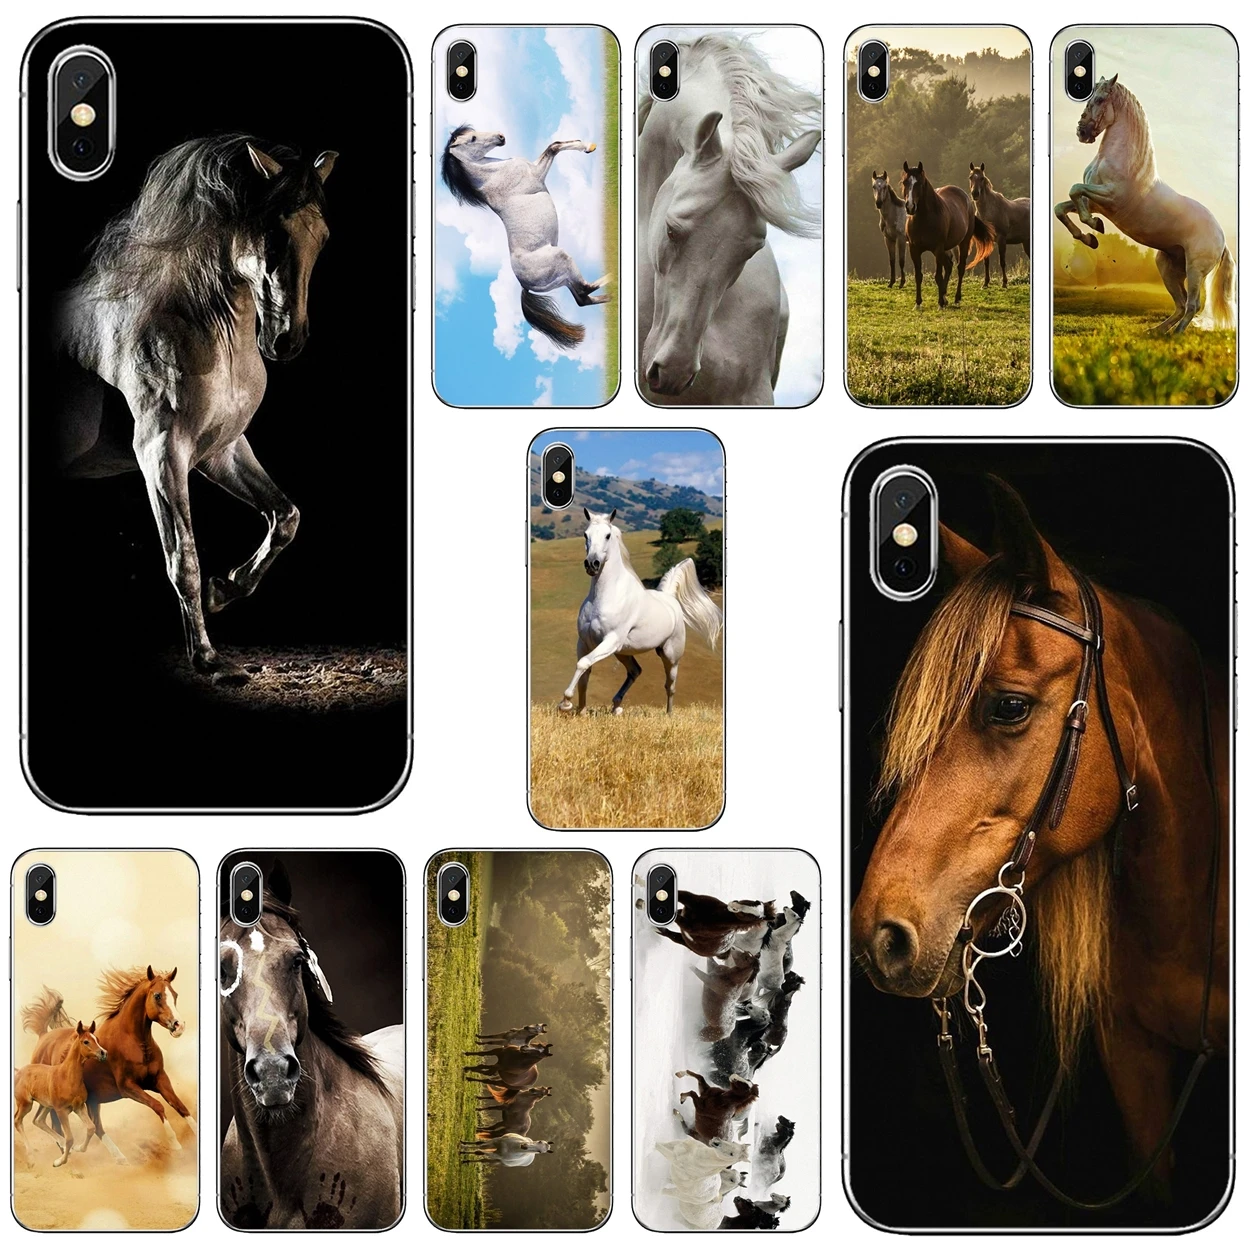 Мягкие чехлы Broncos для Apple iPhone 10 11 12 Pro Mini 4S SE 5C 6 6S 7 8 X XR XS Plus Max 2020 | Мобильные телефоны